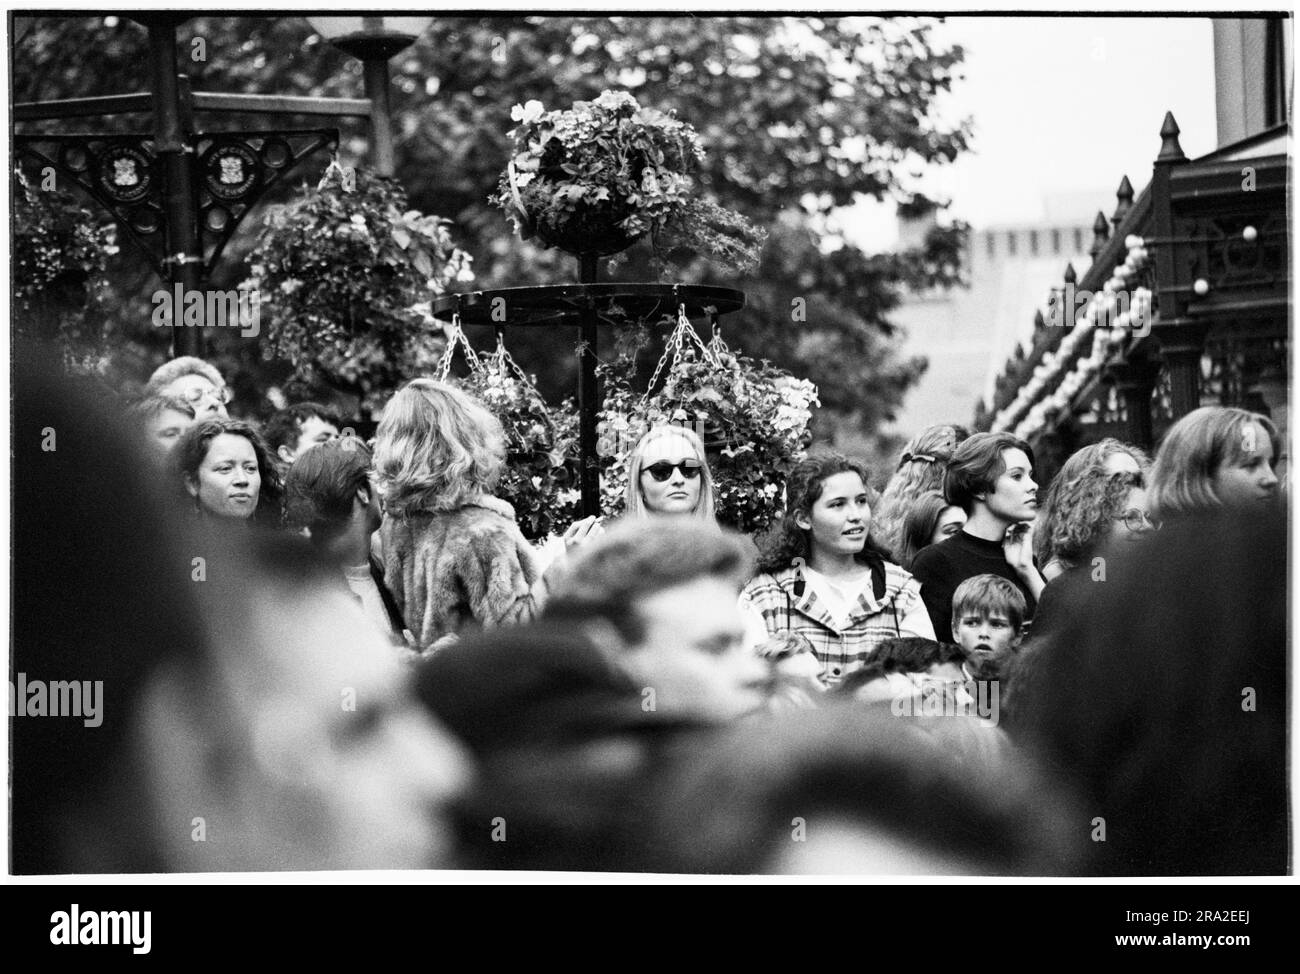 Grande folla nei panni dei Bon Jovi che suonano in un concerto di free busking sul palco di Queen Street, Cardiff, Galles, Regno Unito, il 21 giugno 1995. Il concerto era quello di pubblicizzare il concerto poco venduto all'Arms Park Stadium il giorno successivo. Foto: Rob Watkins Foto Stock